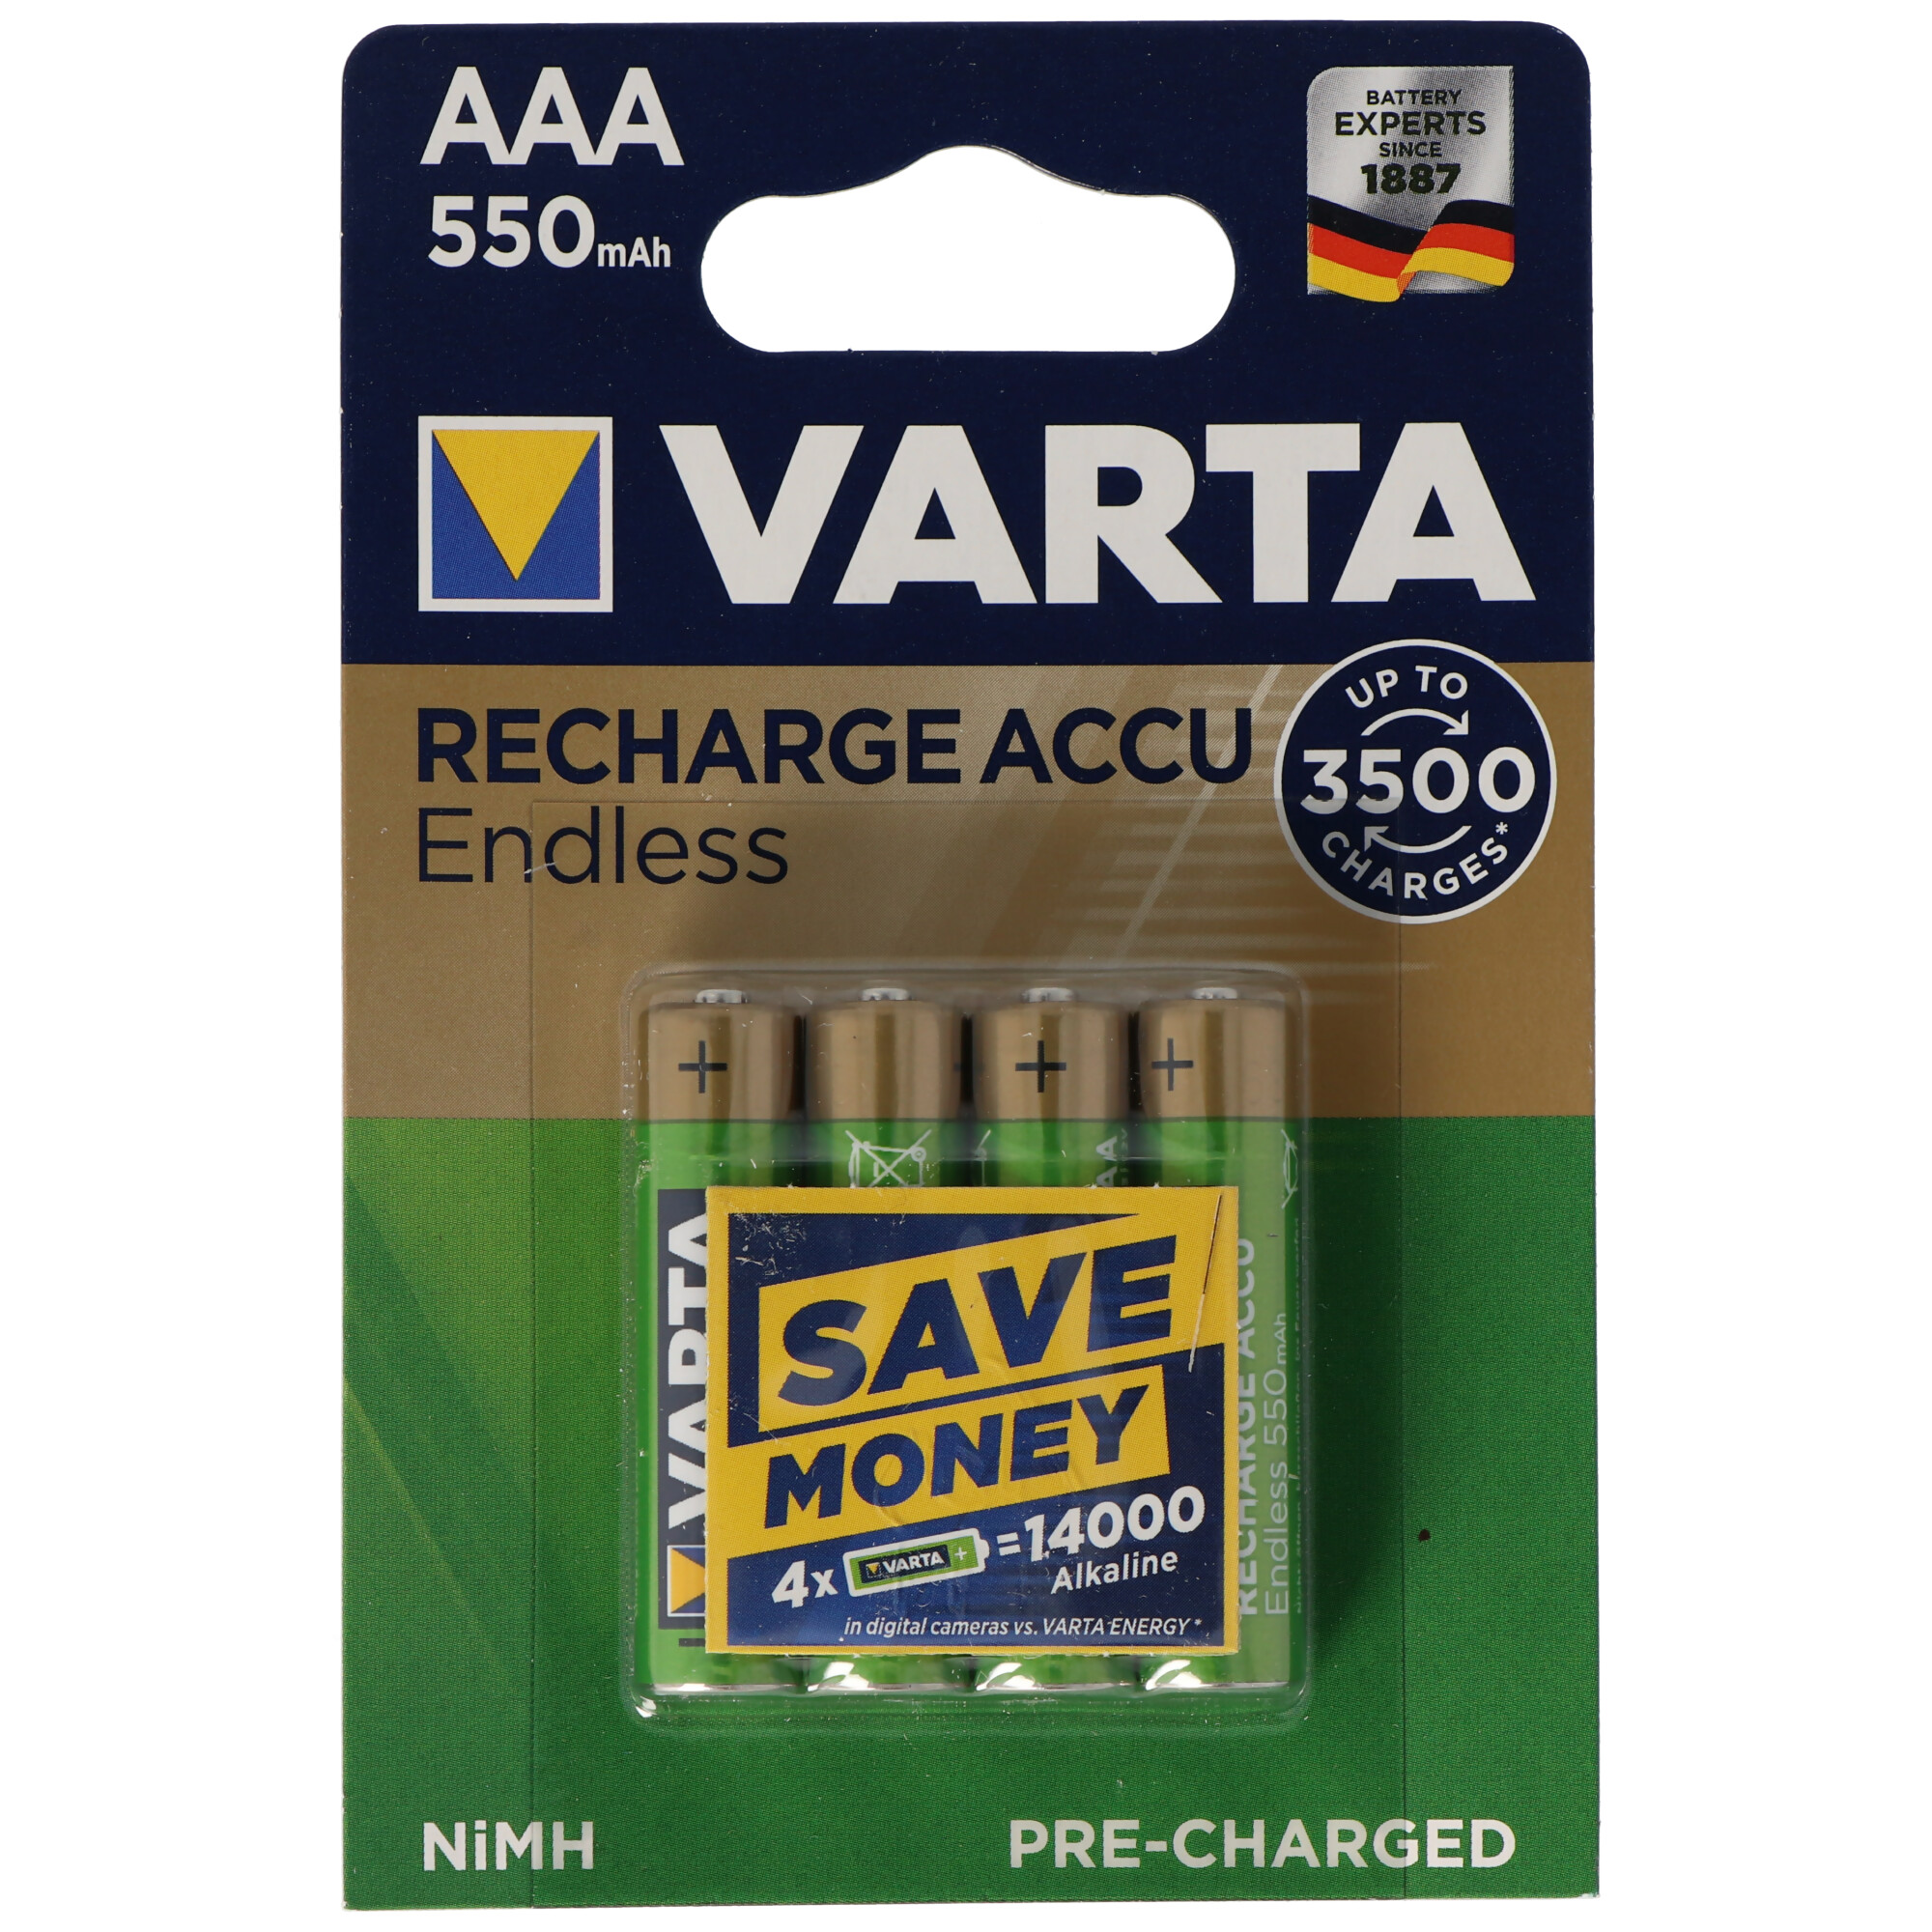 Varta Recharge Accu Endless 56663101404 AAA LR03 Akku 4er Blister 1,2 Volt 550mAh bis zu 3500x aufladbar, inklusive kostenloser AccuCell Akkubox